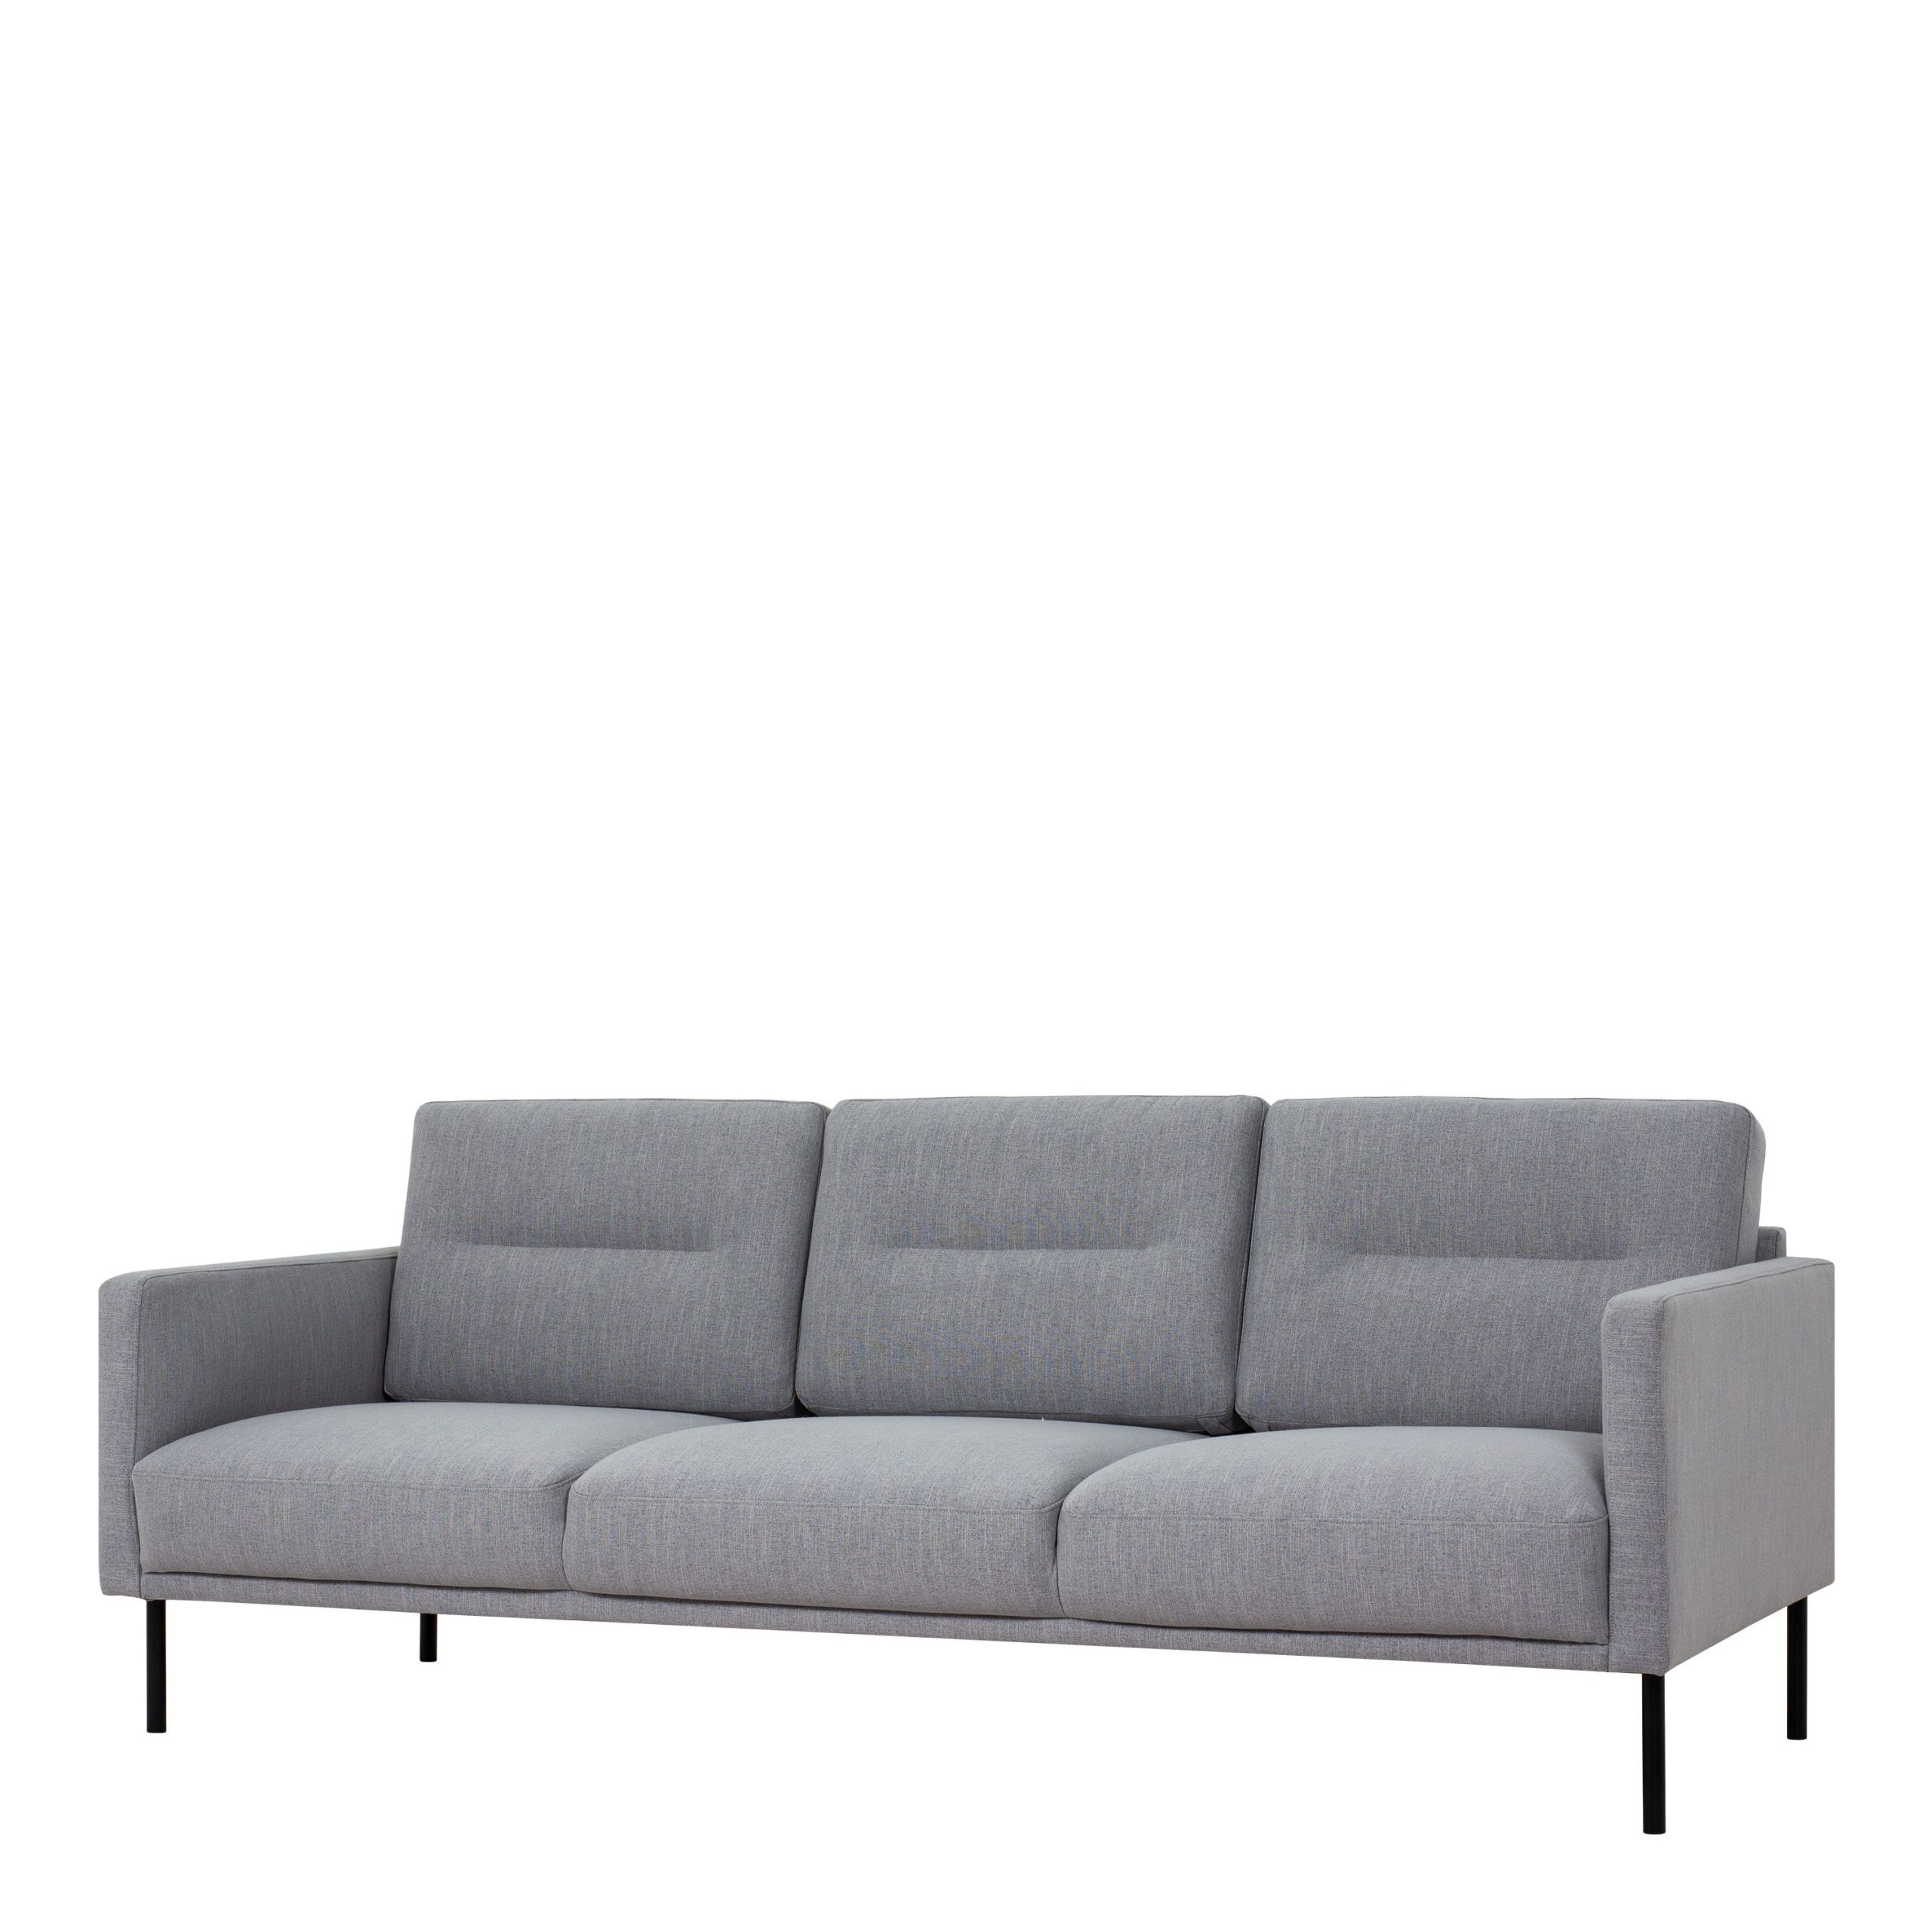 Larvik 3 Seater Sofa – Grey, Black Legs